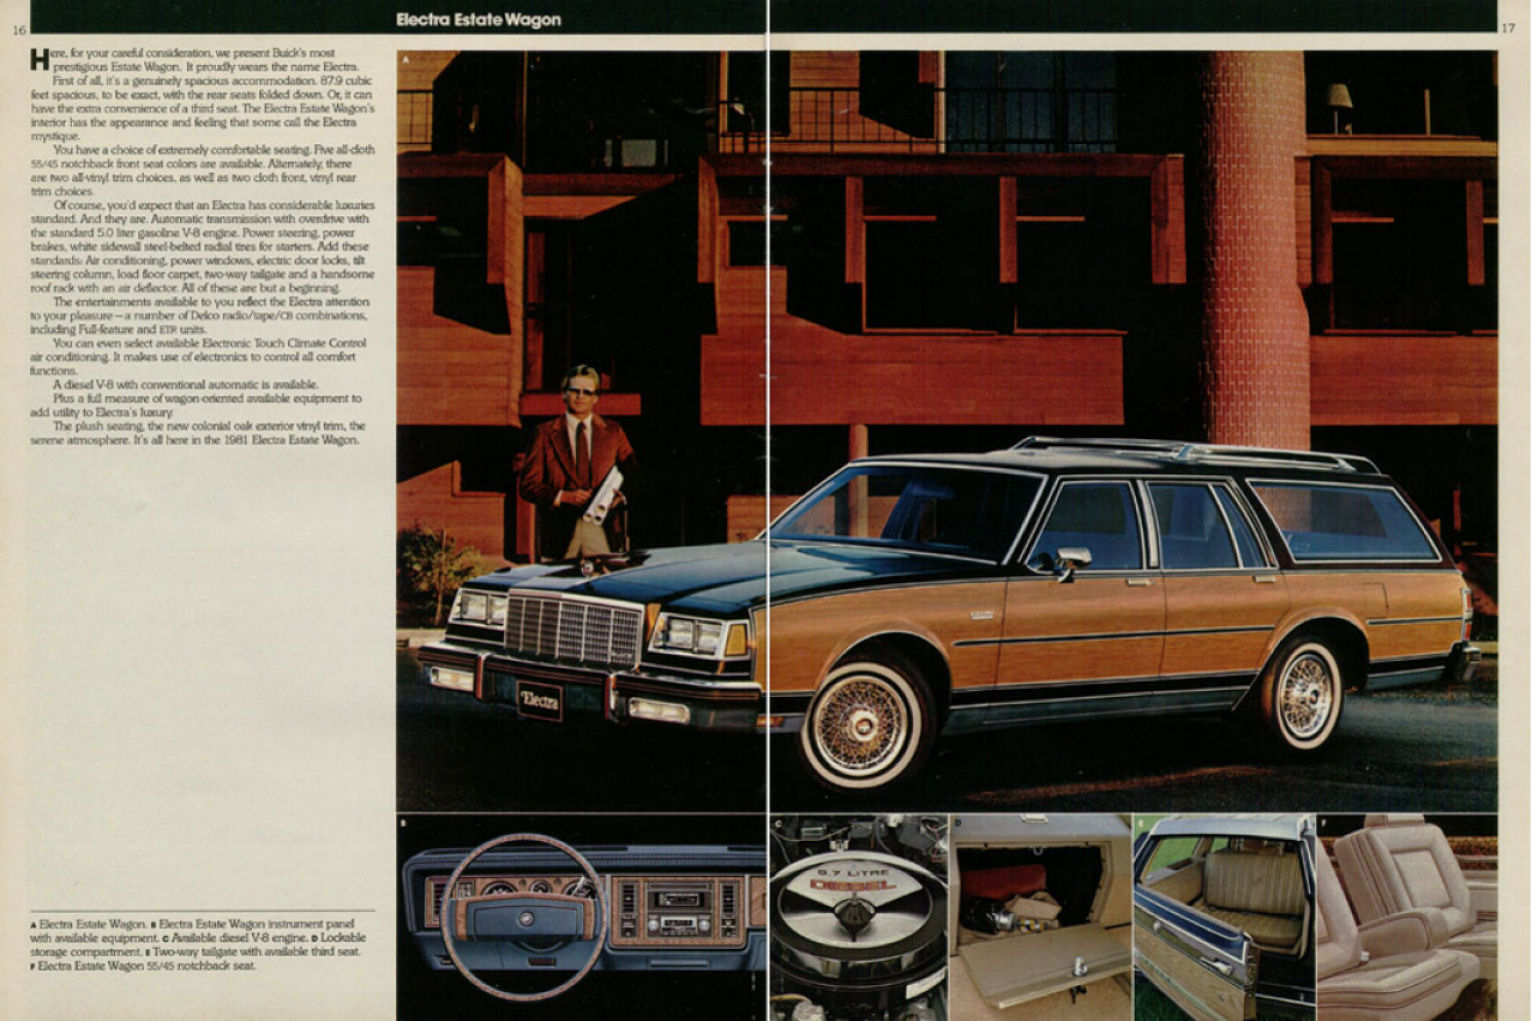 1981 Buick Full Line-16-17